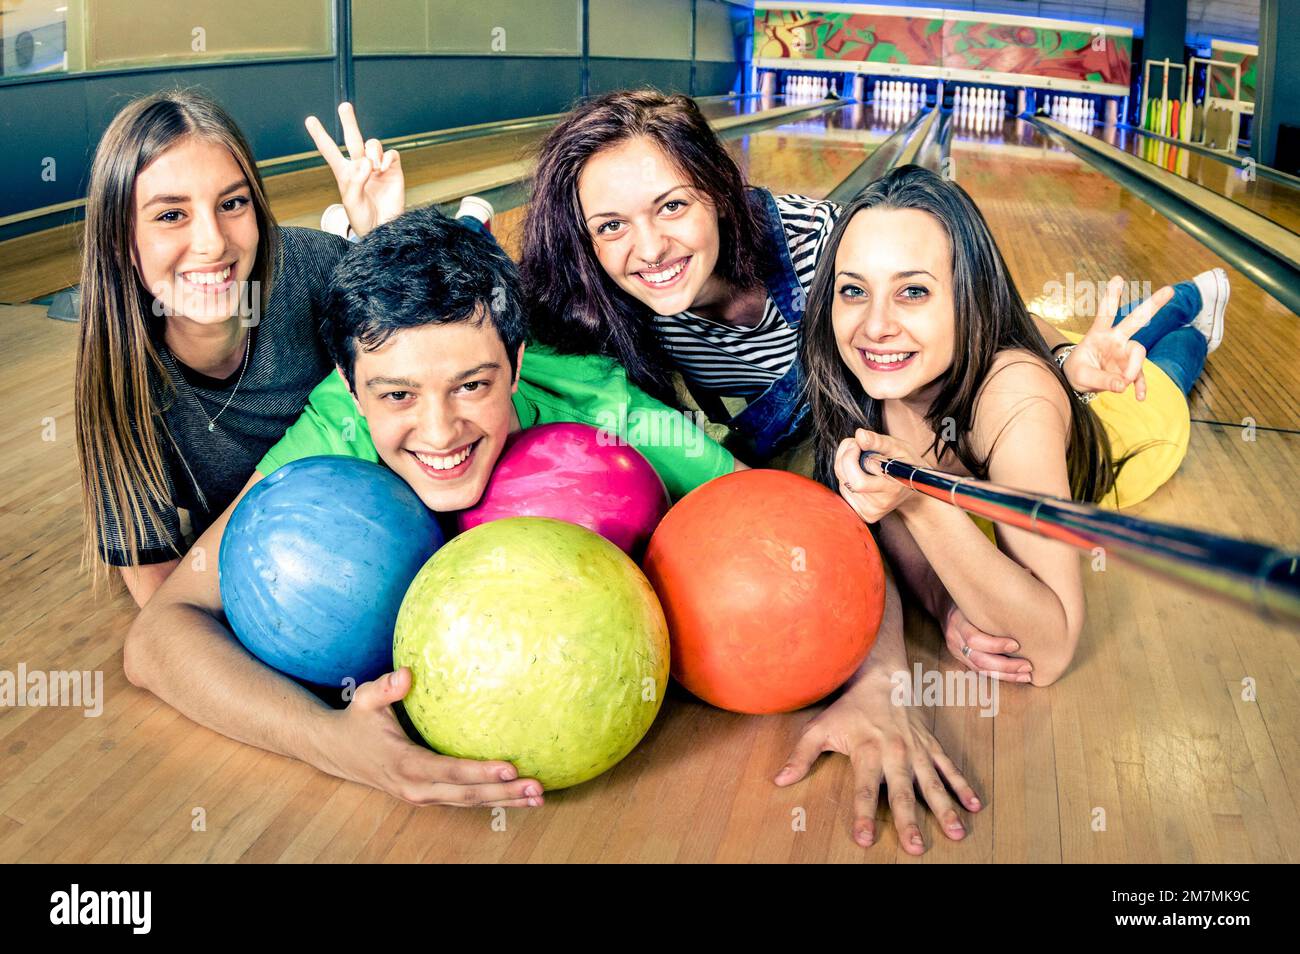 Beste Freunde, die Selfie-Stäbchen benutzen, um ein Foto auf der Bowlingbahn zu machen - Freundschaftskonzept mit jungen, verspielten Menschen, die Spaß miteinander haben - Weiche Konzentration auf den Kerl Stockfoto